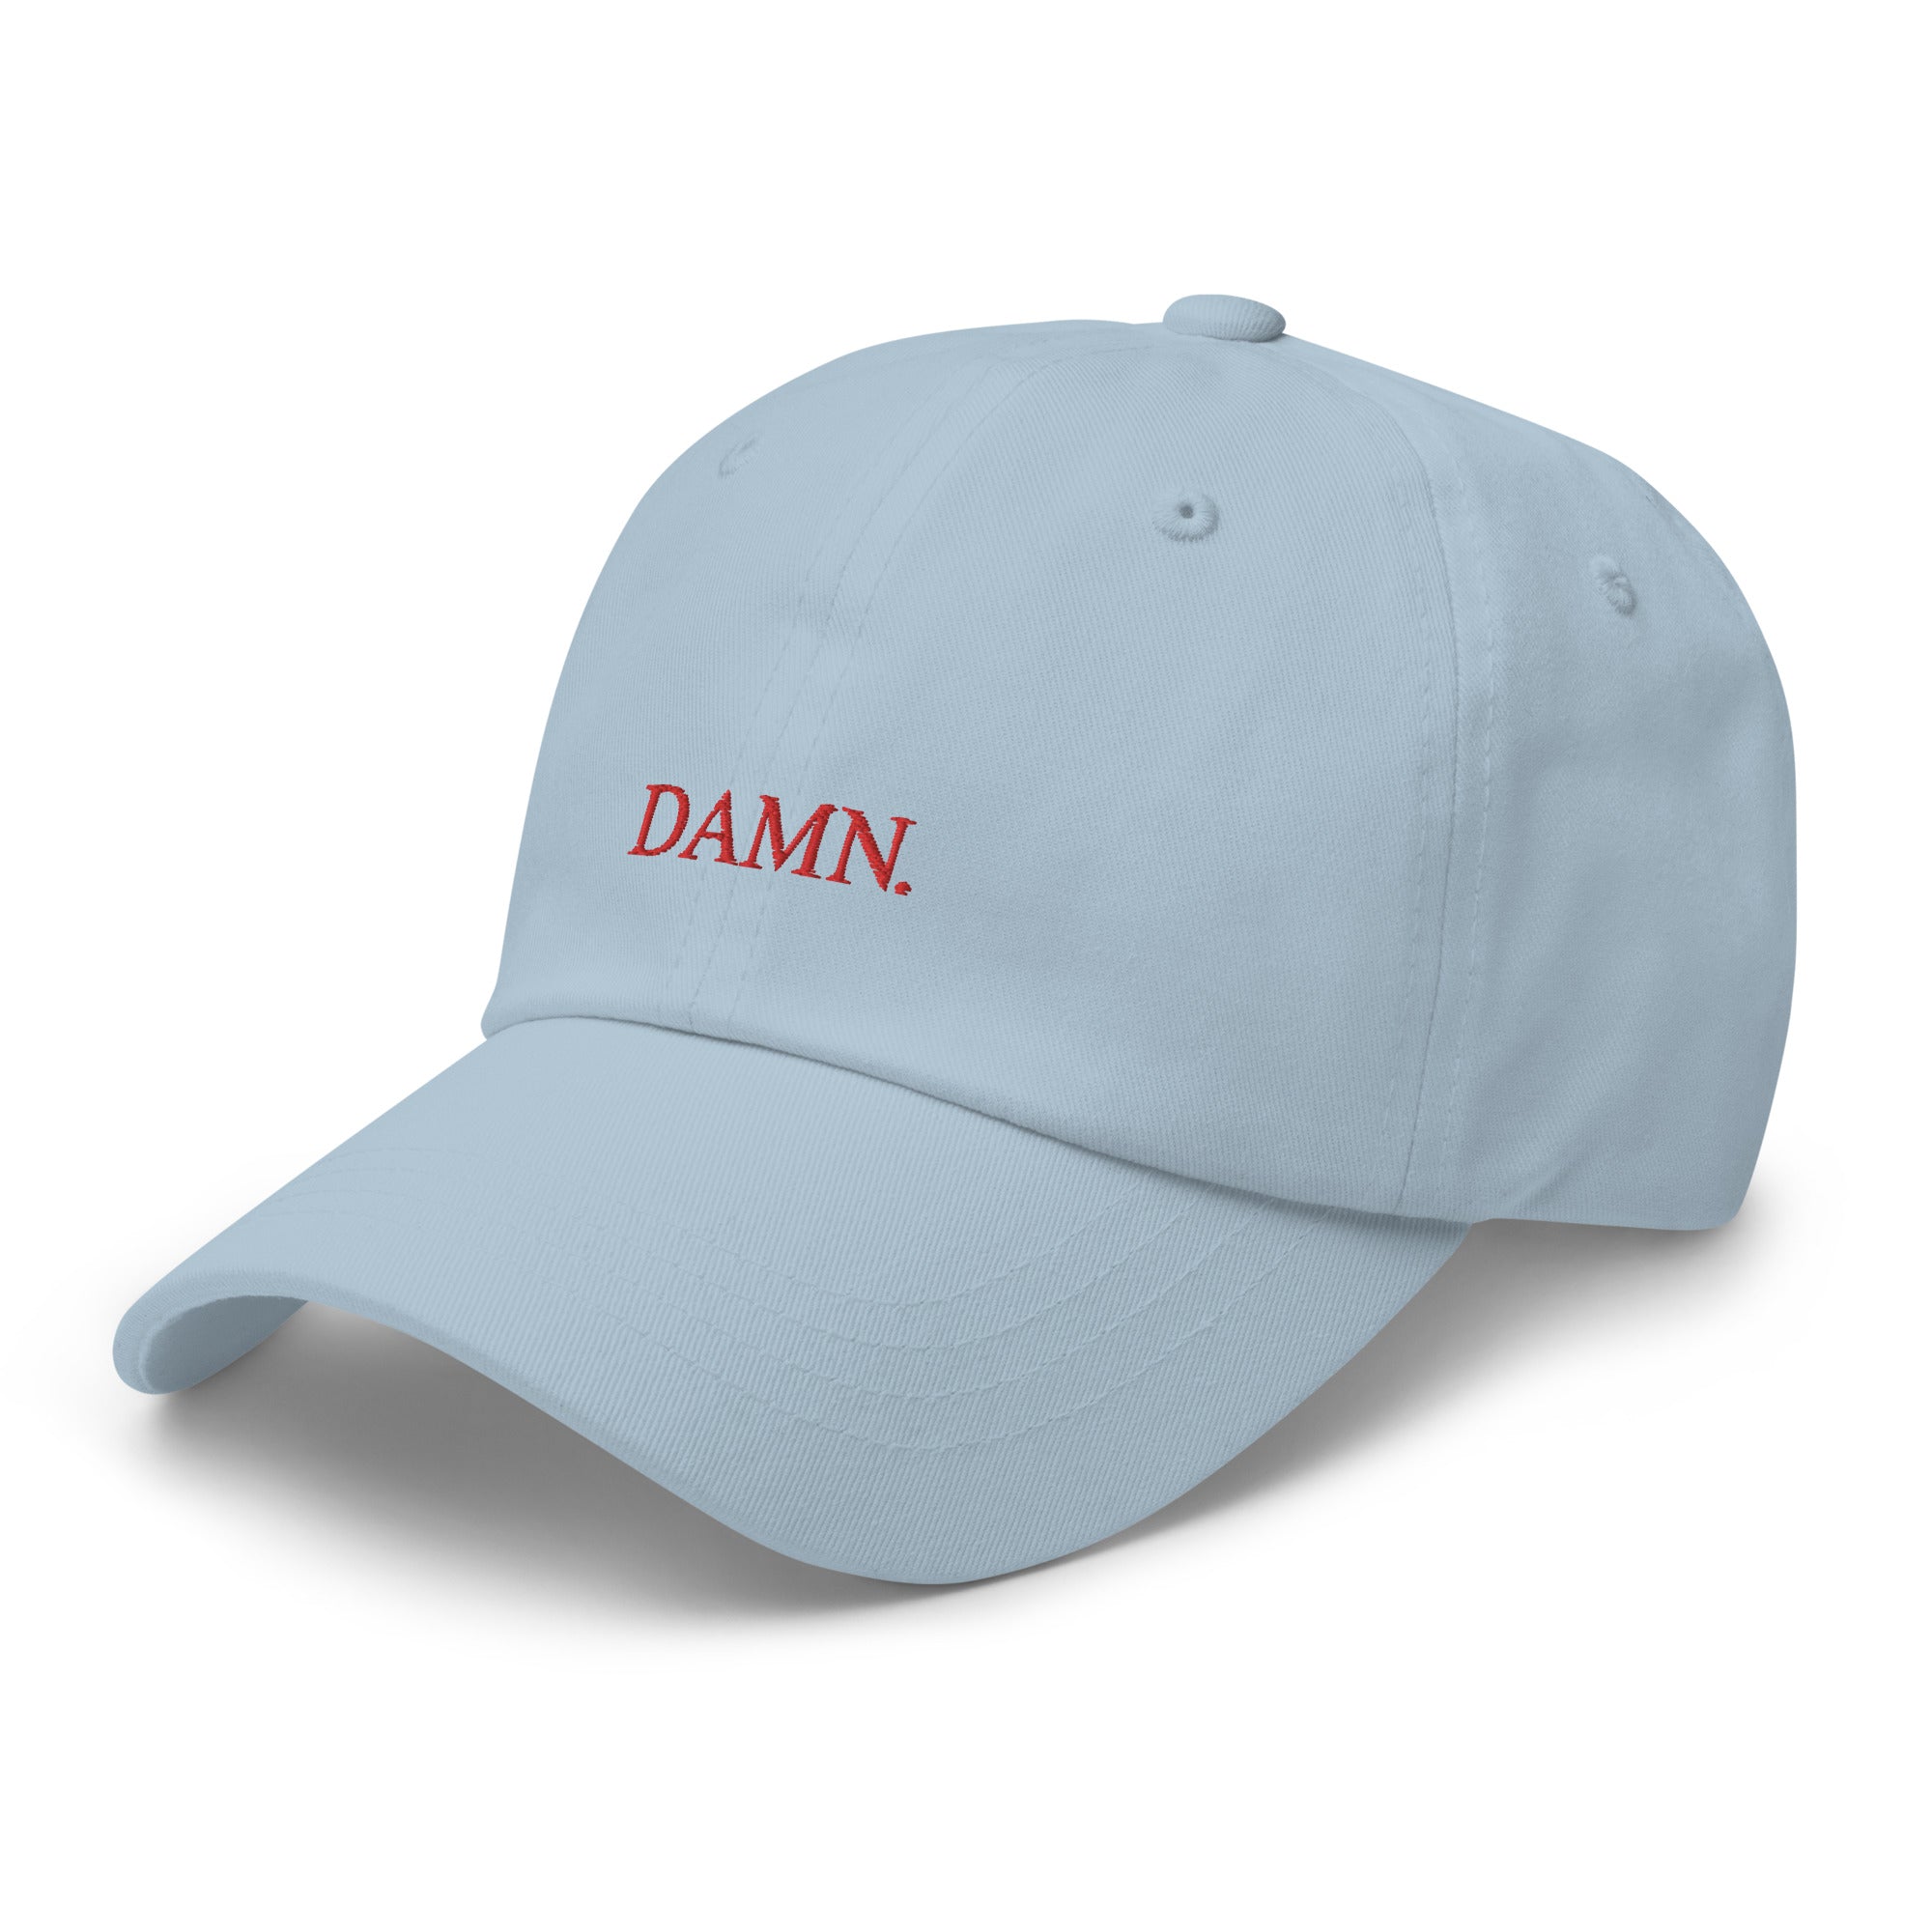 DAMN unisex hat